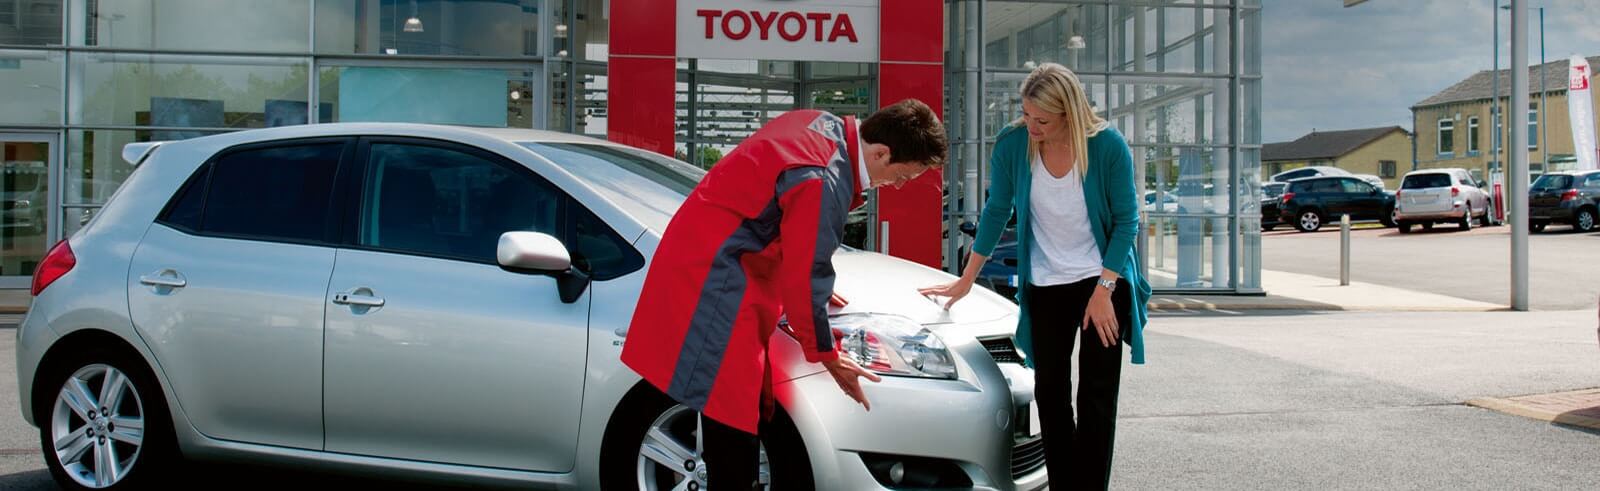 Kund och tekniker kollar på bil under Toyotaservice